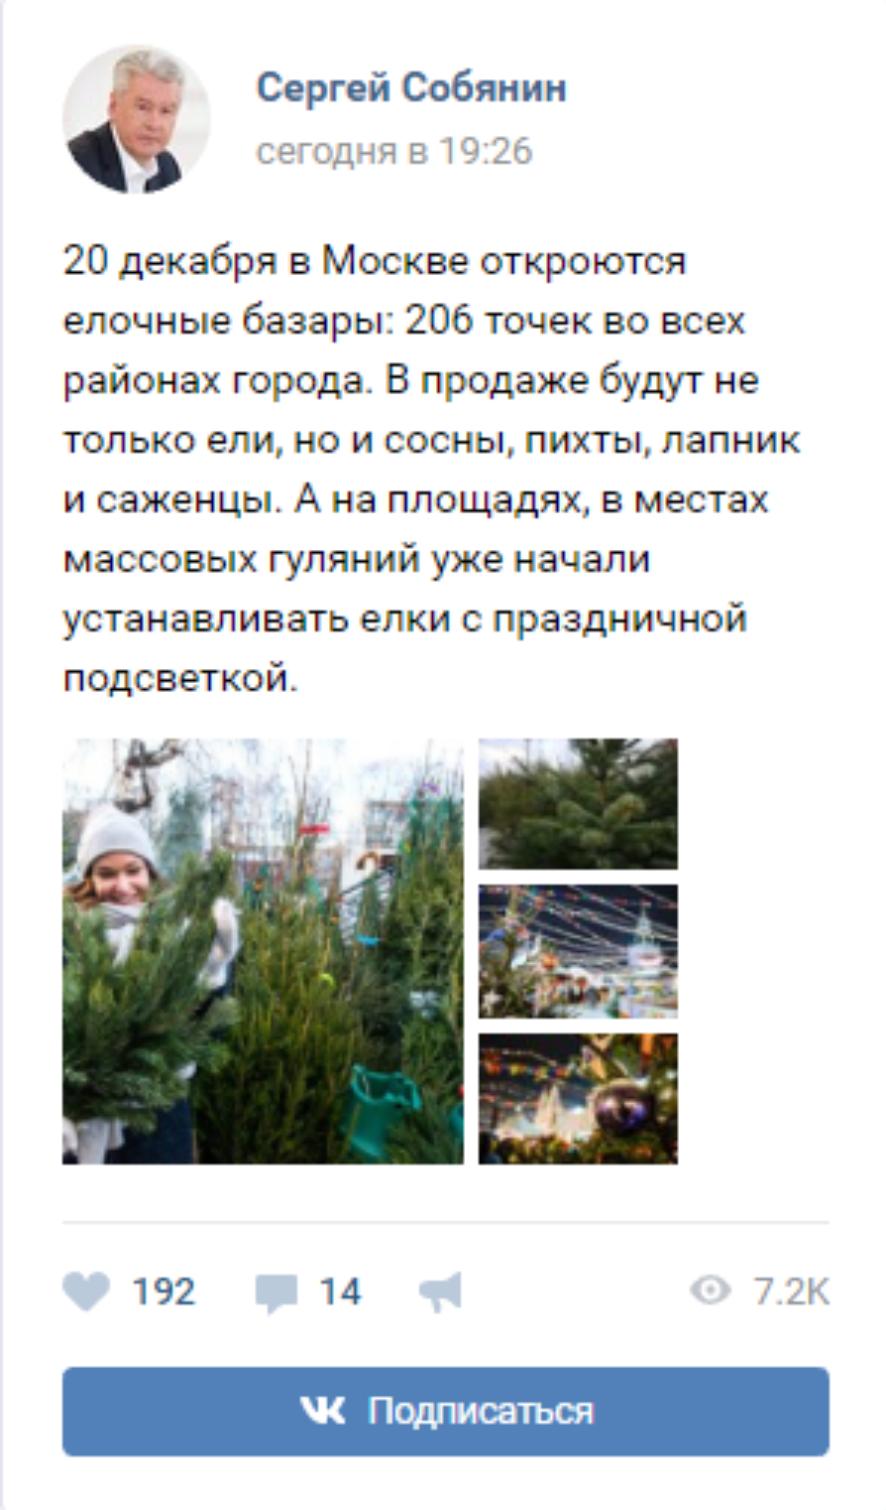 206 елочных базаров откроются в Москве 20 декабря